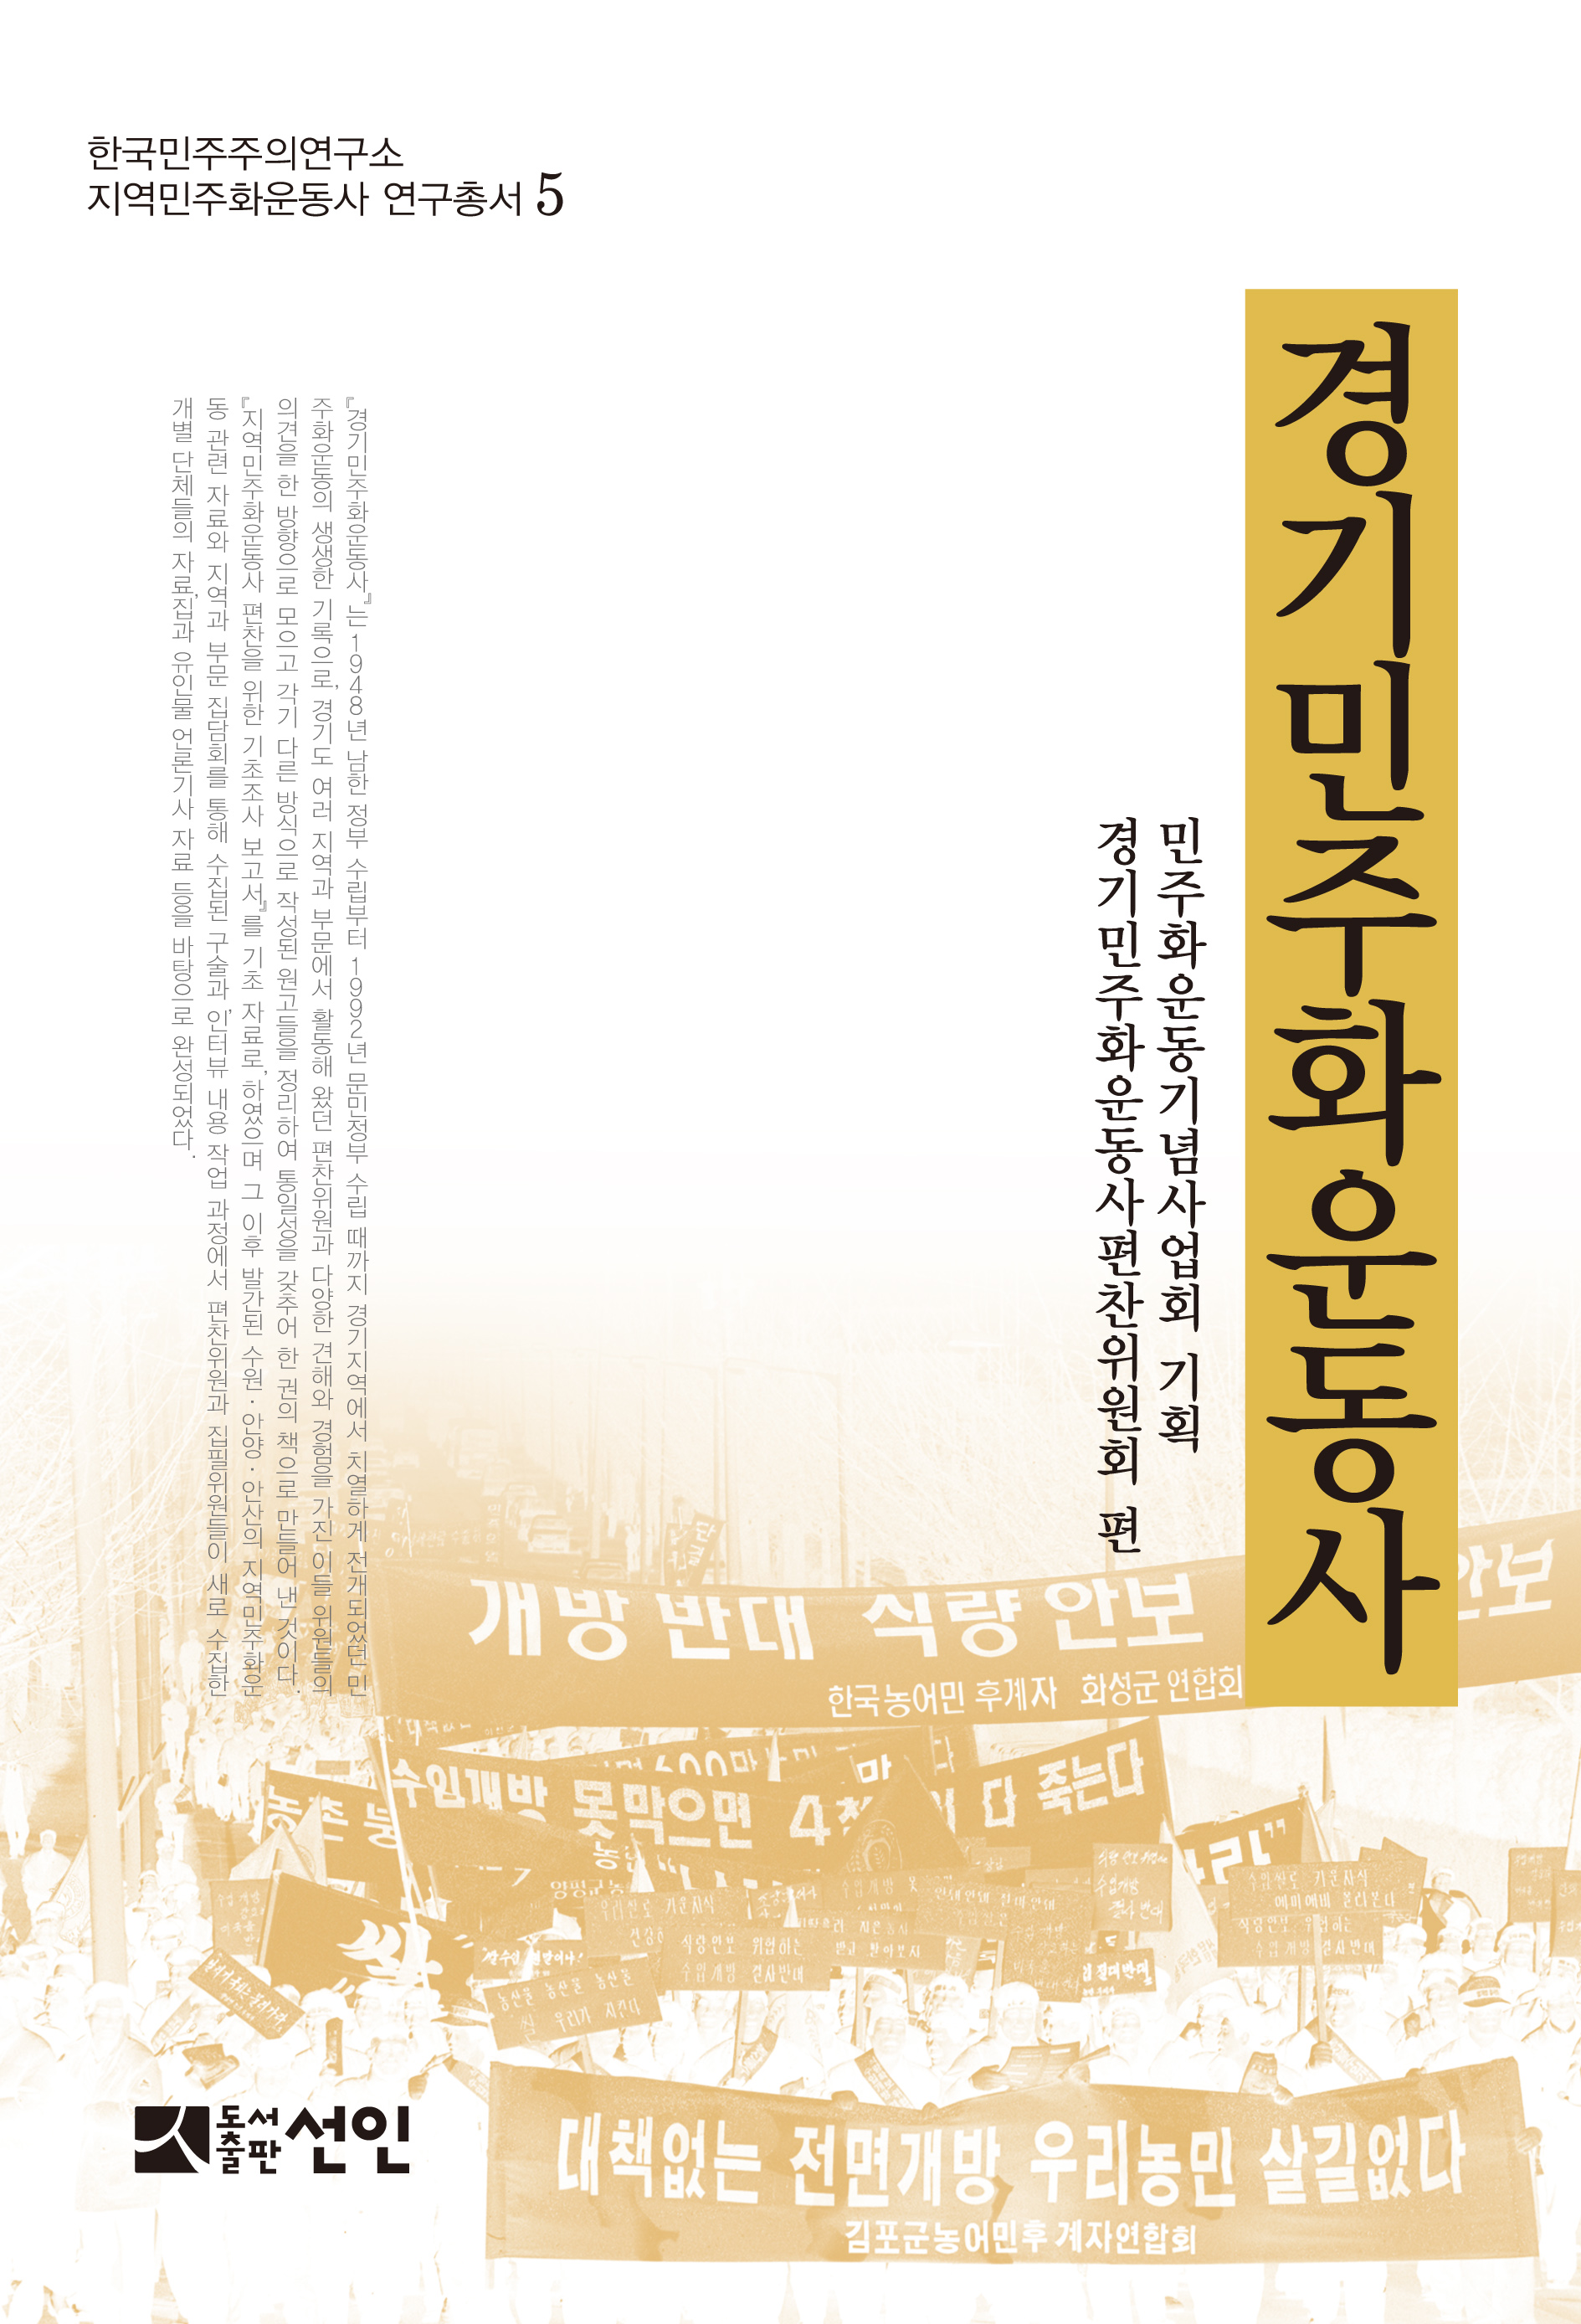 『경기민주화운동사』, 『한국 민주주의의 미래와 과제』 발간